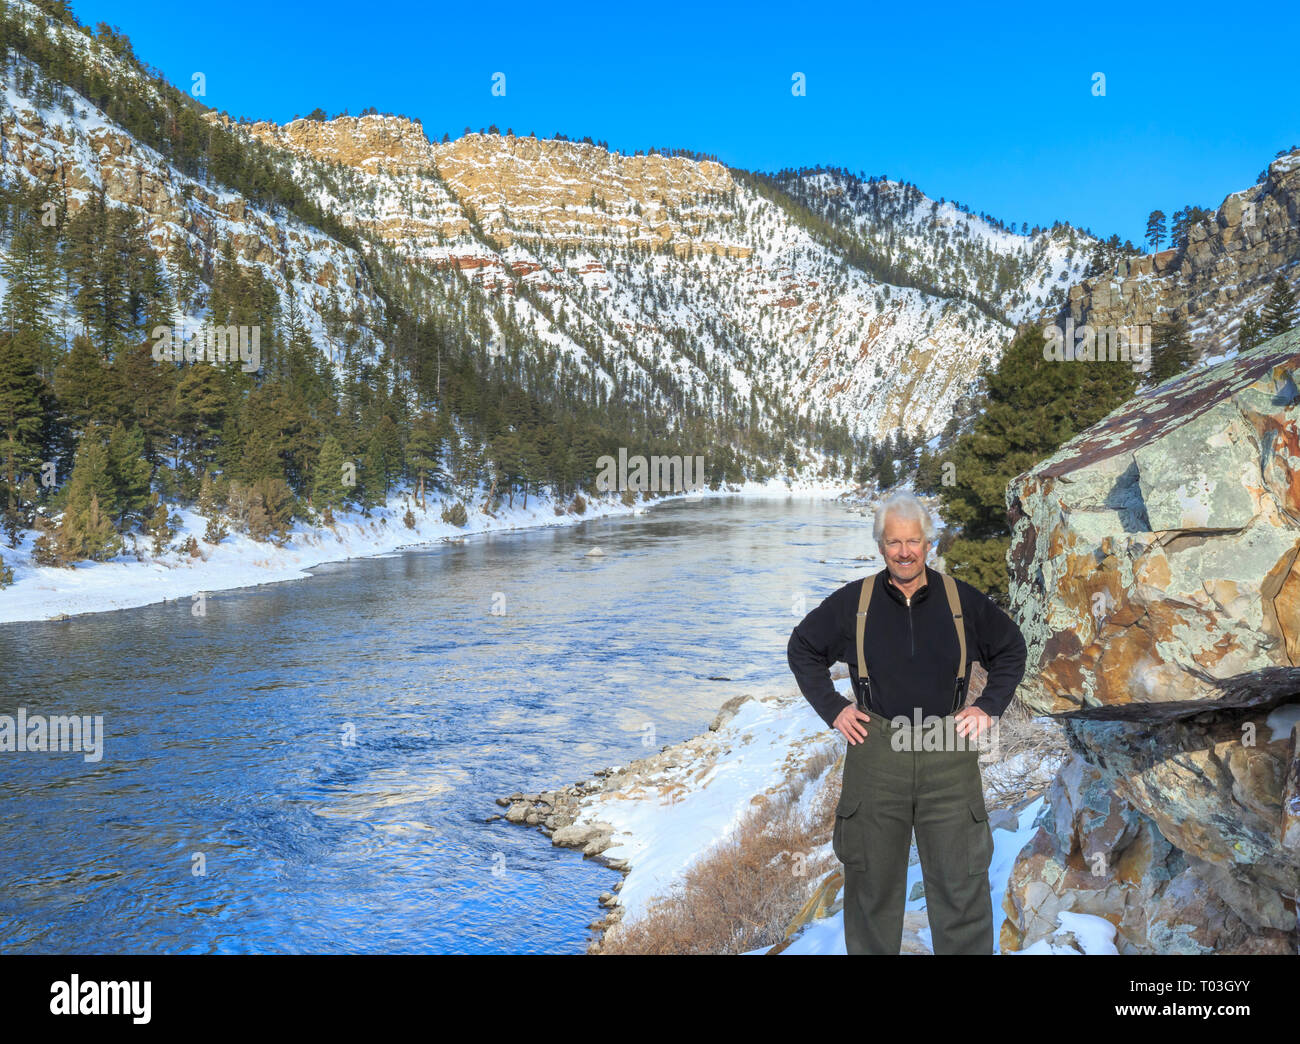 john lambing in winter along the missouri river in a canyon below hauser dam near helena, montana Stock Photo